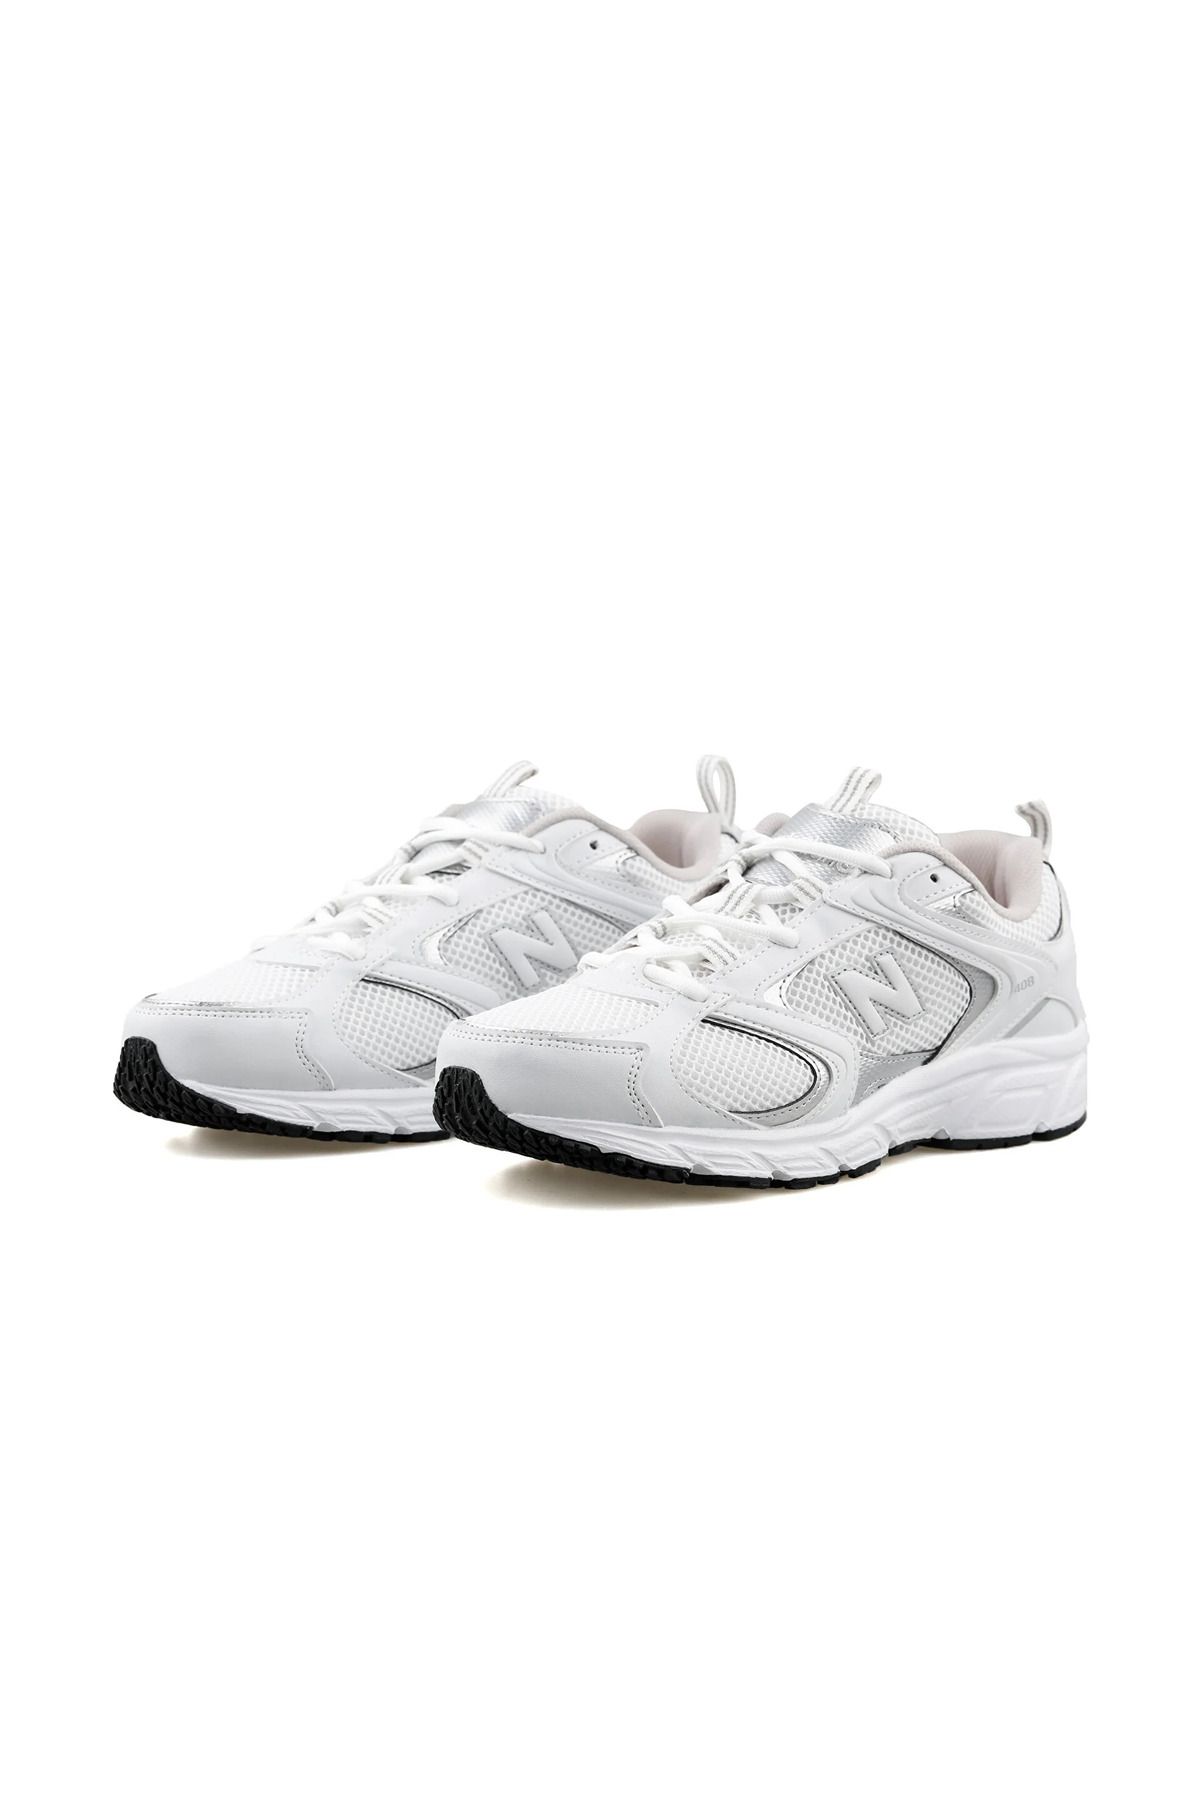 New Balance Lifestyle Ml408 Unisex Beyaz Gri Sneaker Spor Ayakkabı